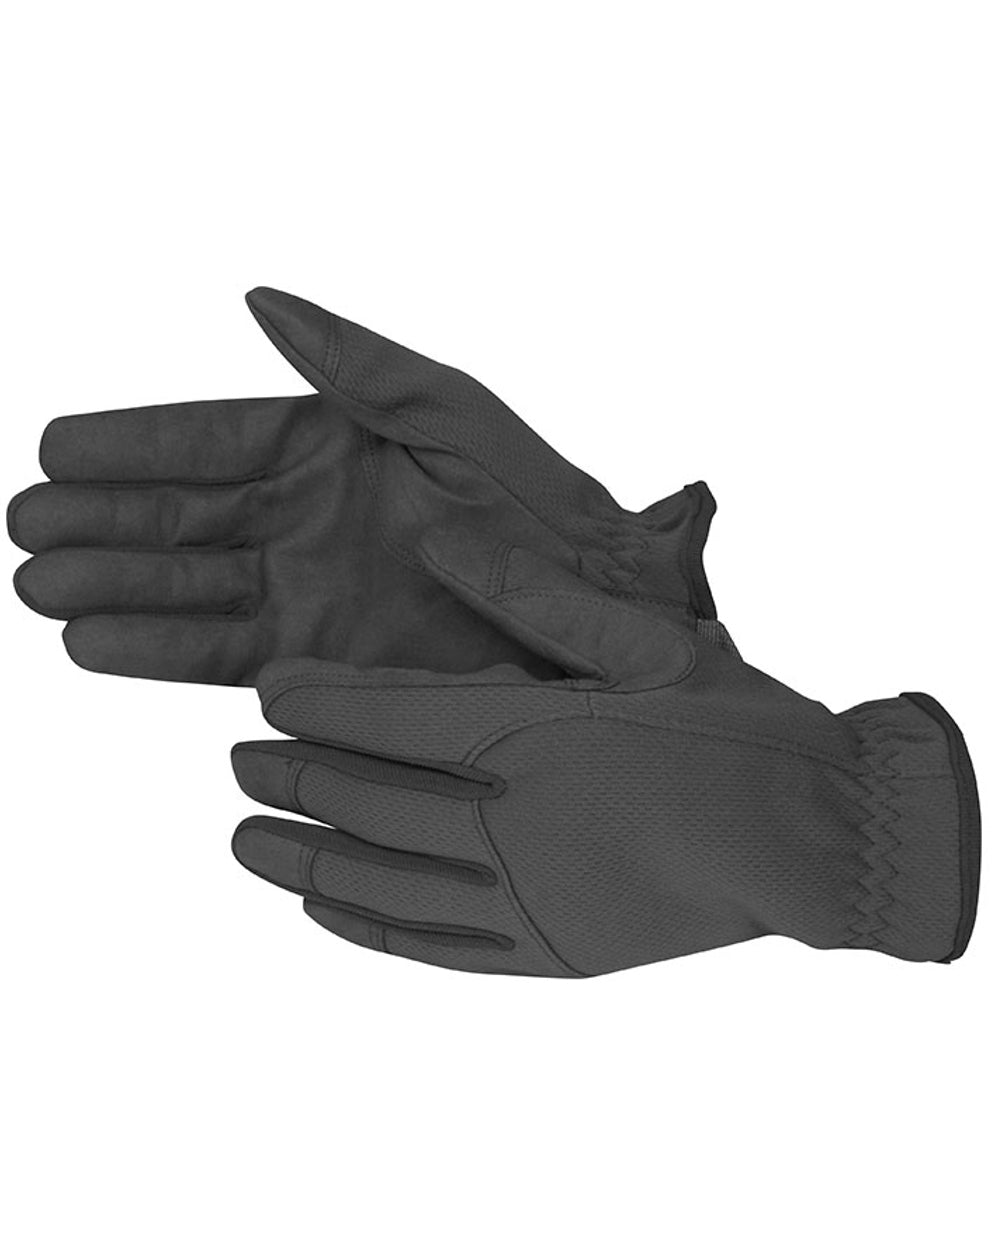 Viper Patrol Gloves in Titanium 